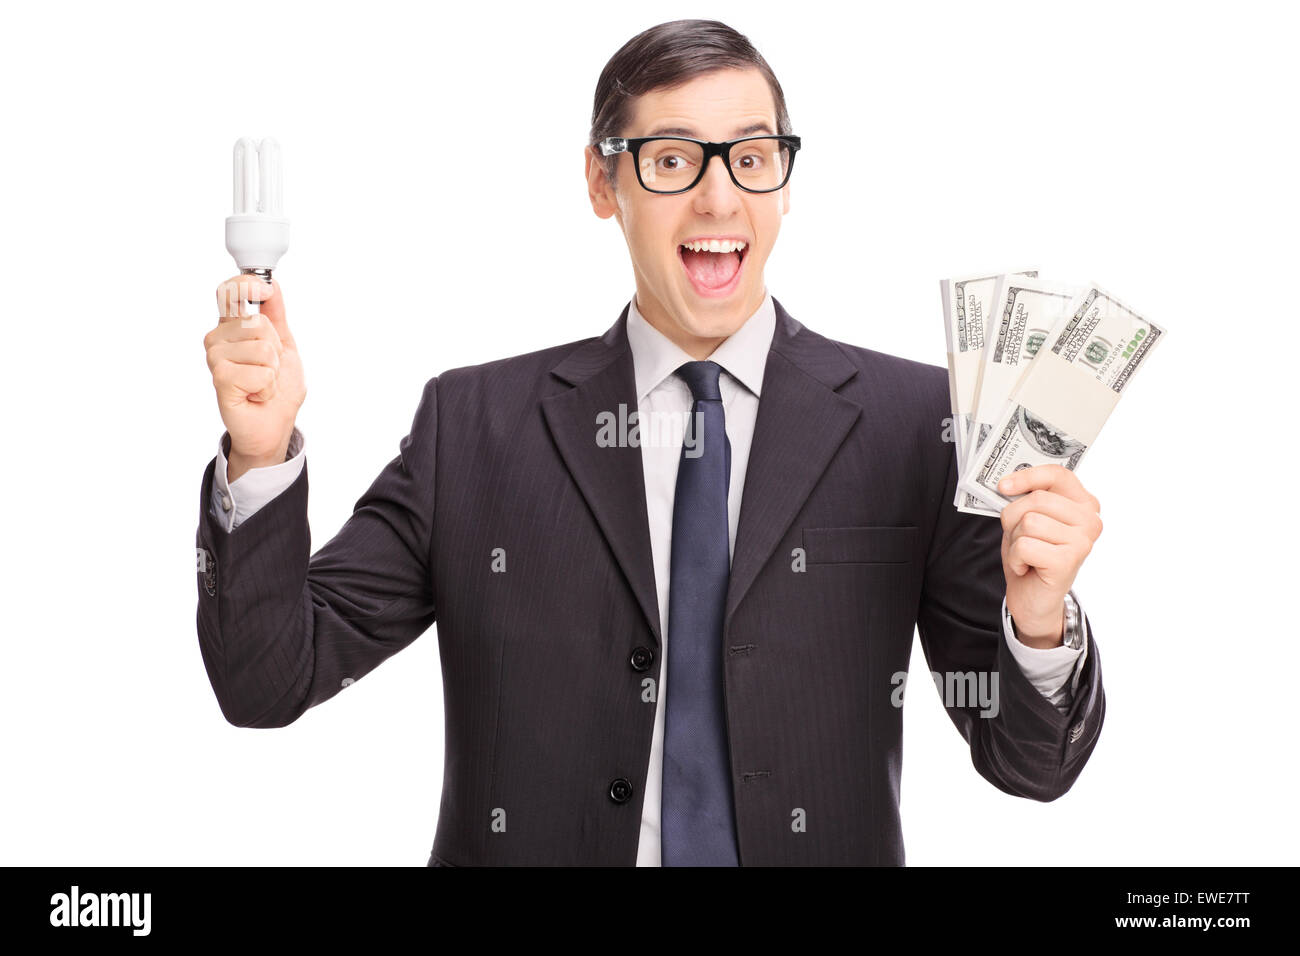 Cheerful young man holding une ampoule à économie d'énergie et trois piles d'argent isolé sur fond blanc Banque D'Images